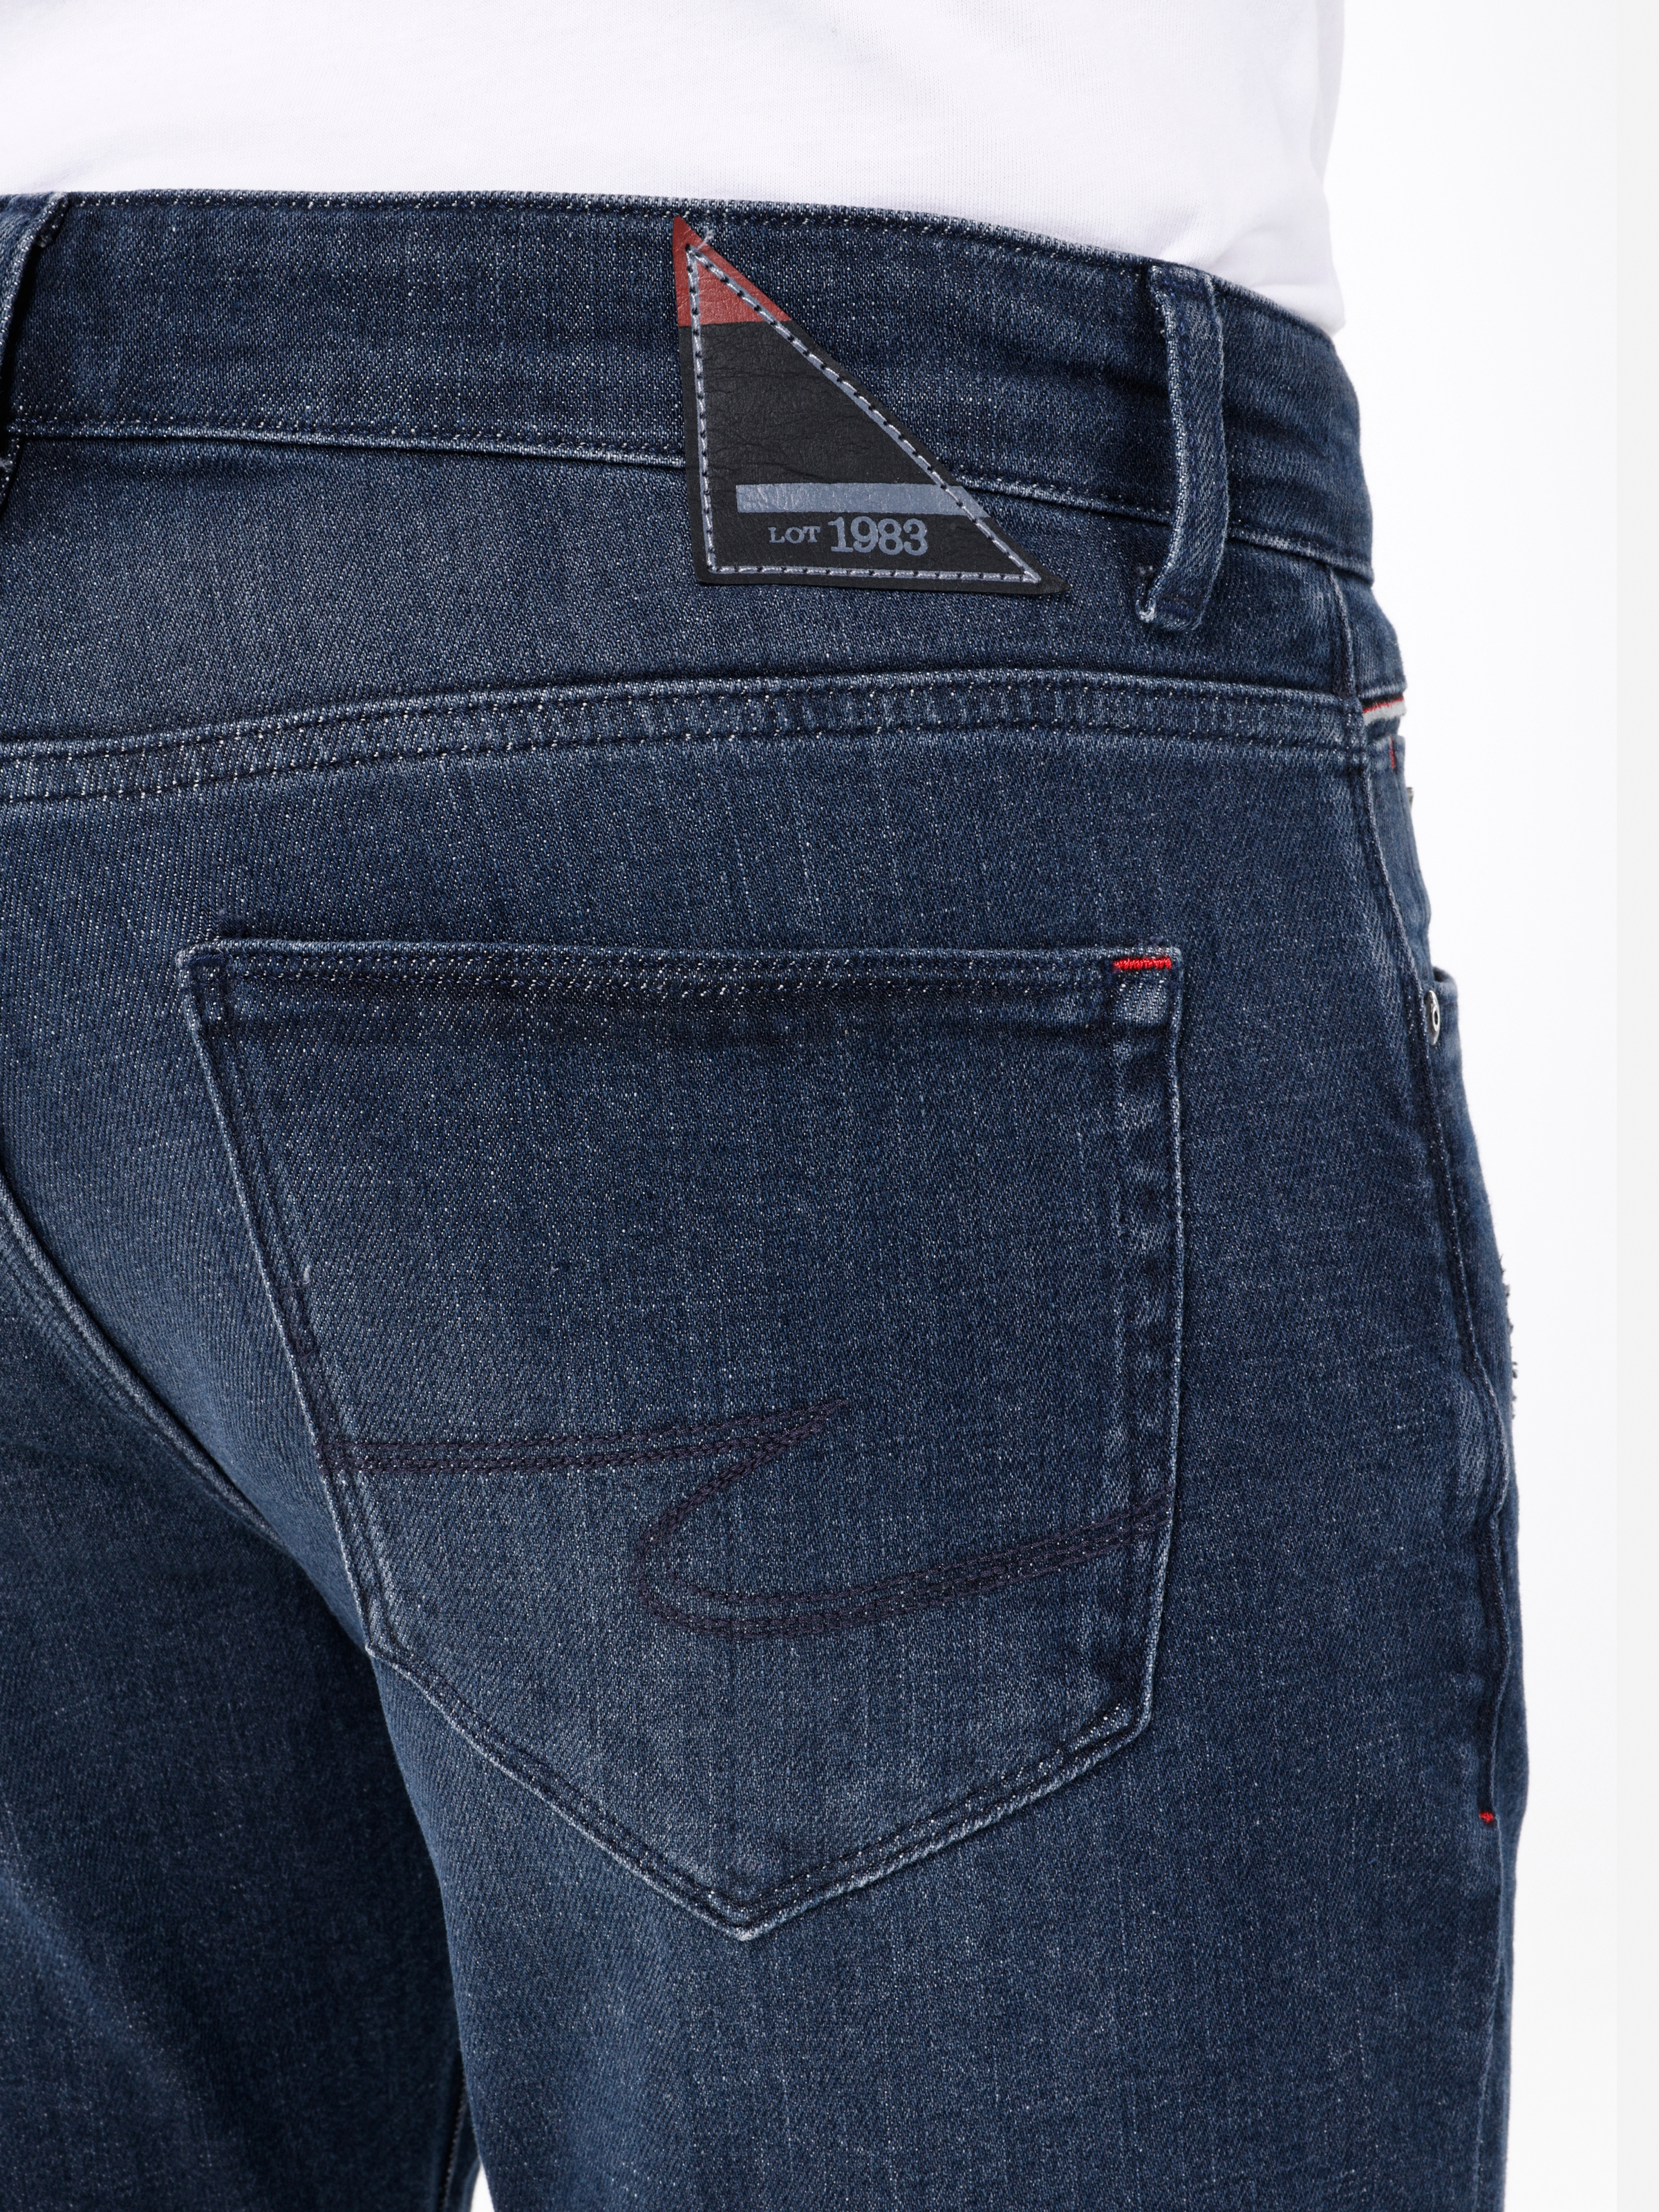 Afișați detalii pentru Pantaloni De Barbati Albastru inchis Slim Fit 041 DANNY CL1068188